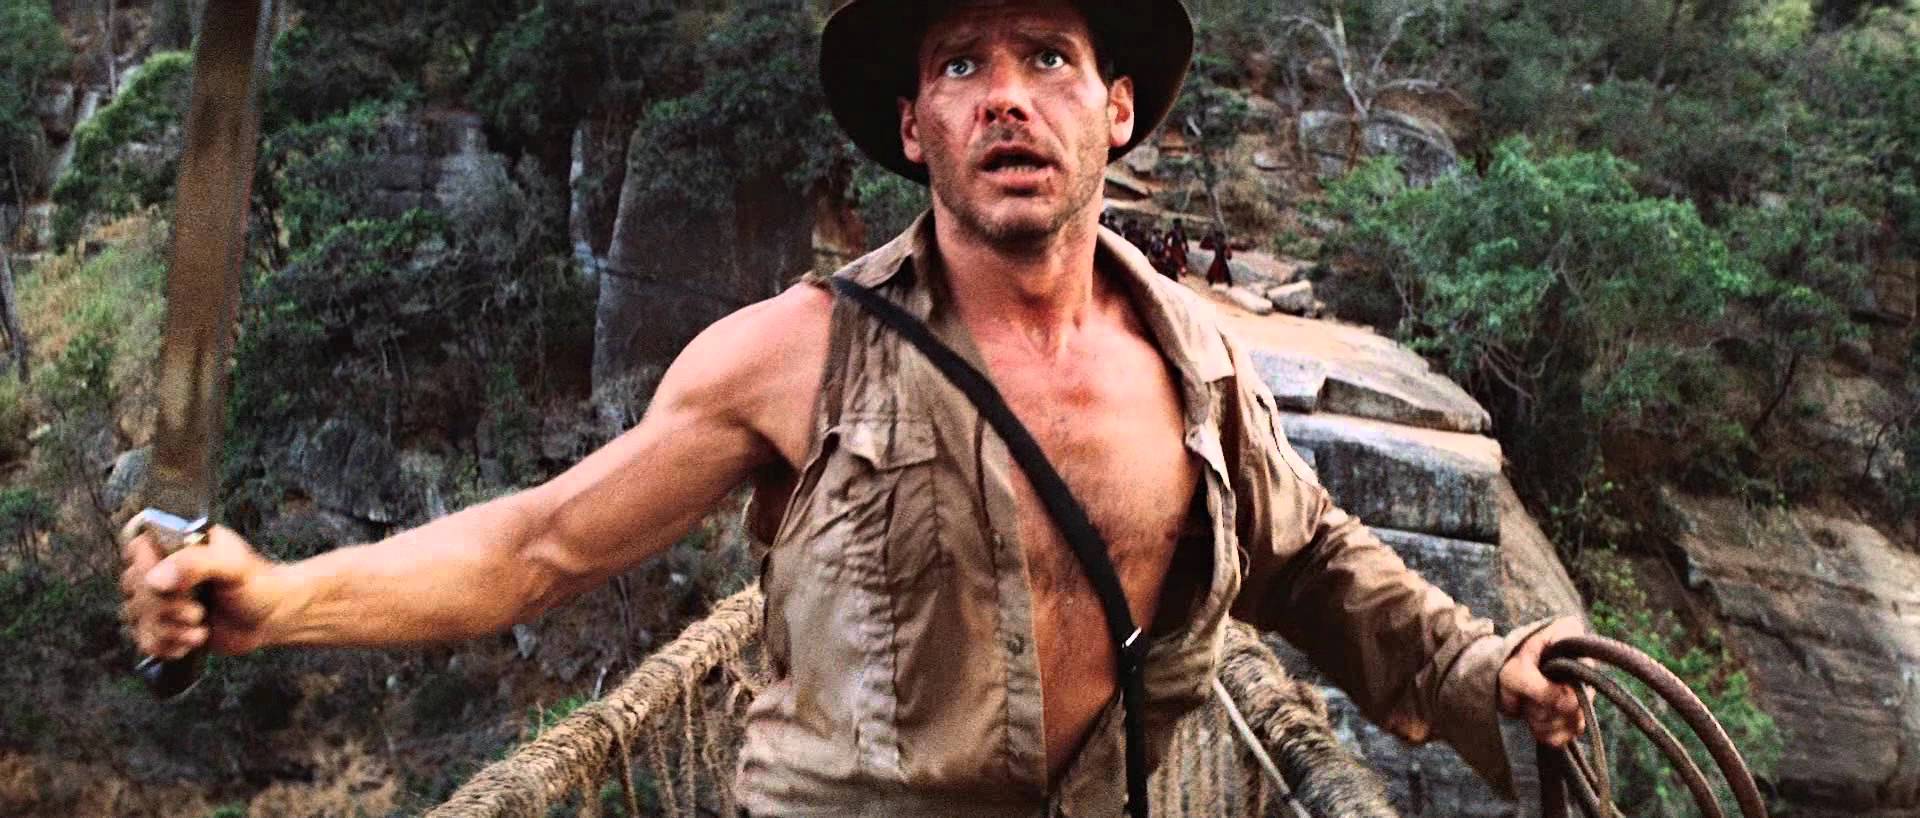 Индиана Джонс и Храм судьбы (Indiana Jones and the Temple of Doom) 1984